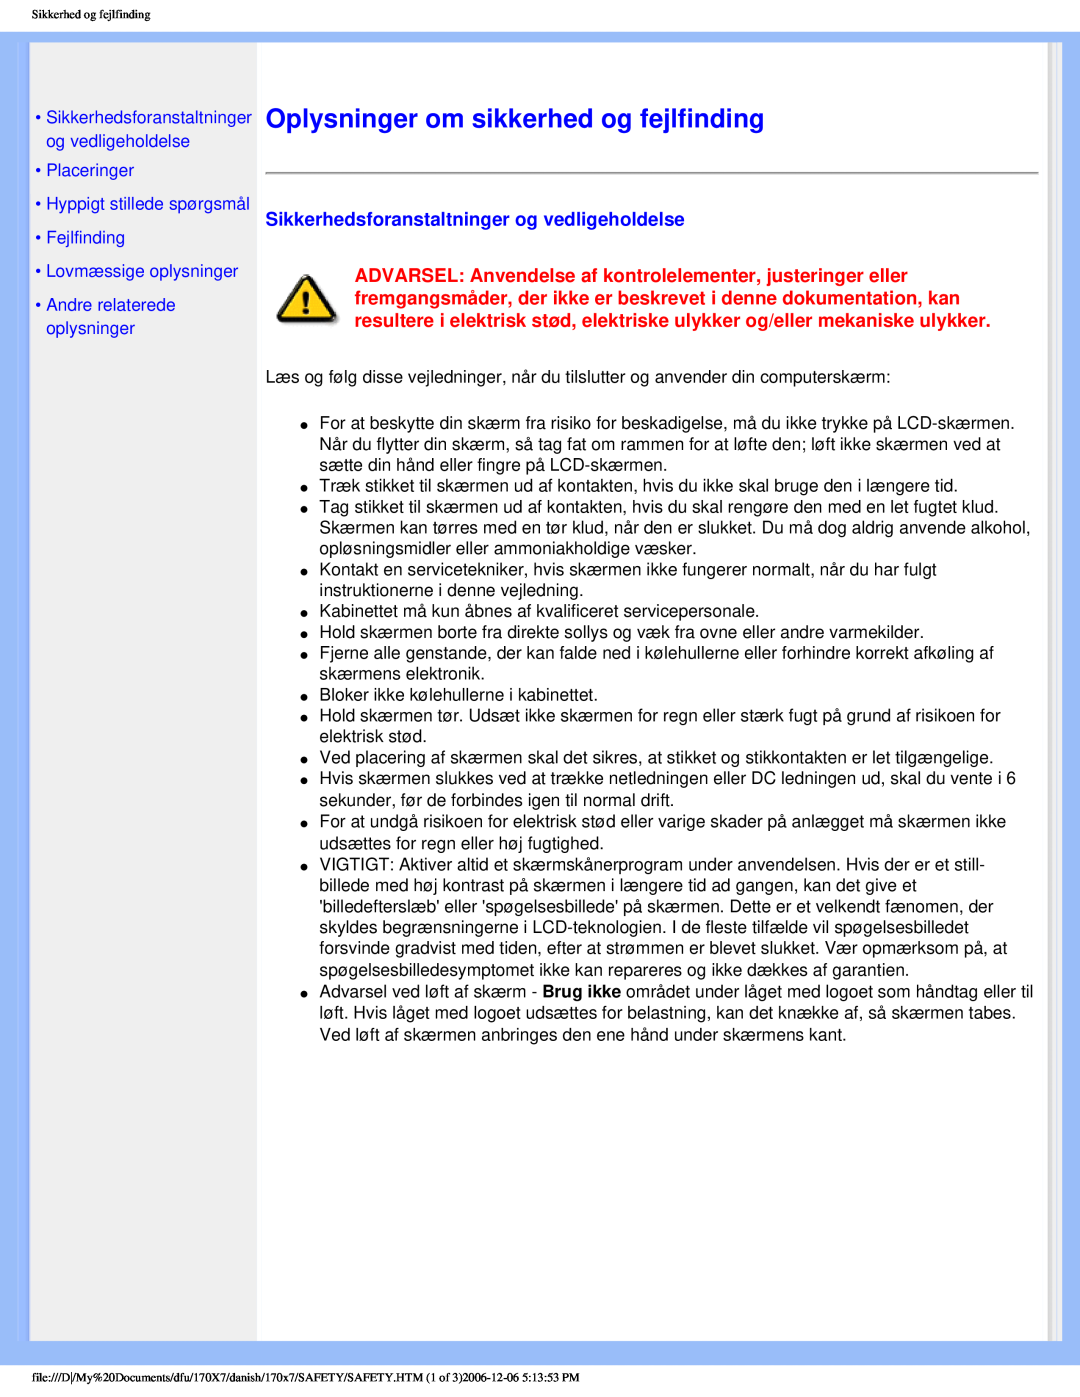 Philips 170x7 user manual Oplysninger om sikkerhed og fejlfinding, Sikkerhedsforanstaltninger og vedligeholdelse 